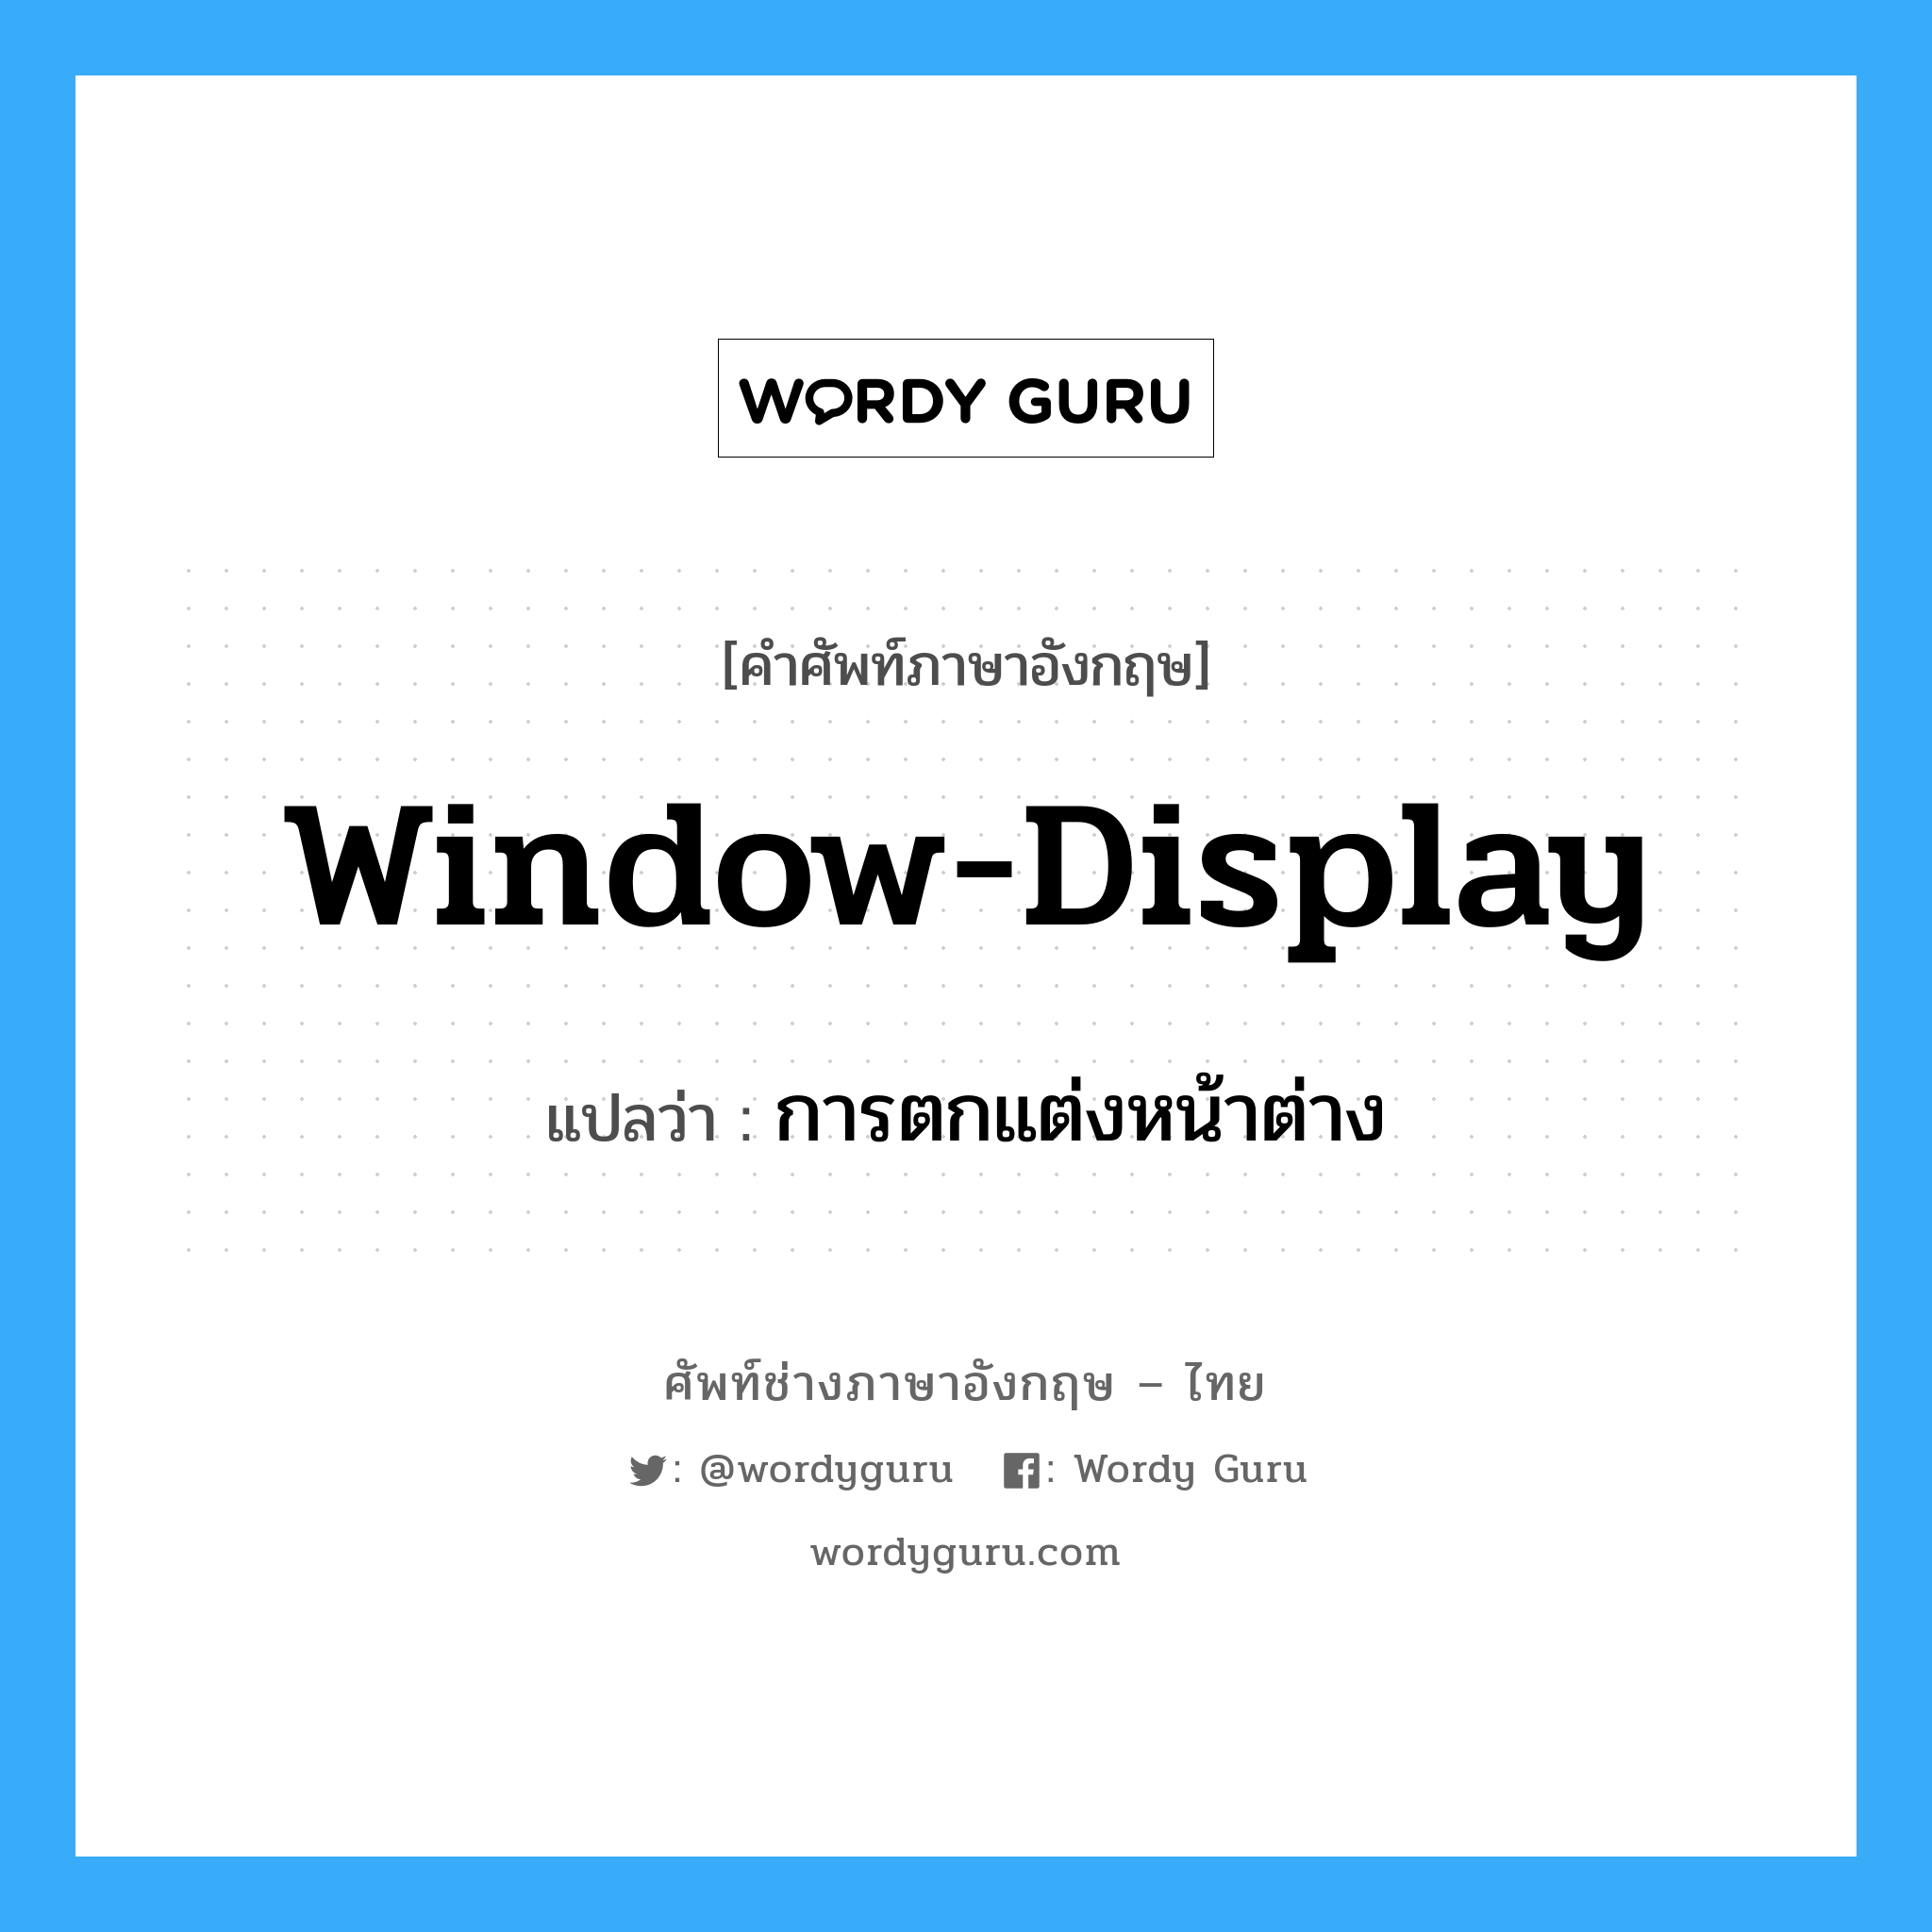 การตกแต่งหน้าต่าง ภาษาอังกฤษ?, คำศัพท์ช่างภาษาอังกฤษ - ไทย การตกแต่งหน้าต่าง คำศัพท์ภาษาอังกฤษ การตกแต่งหน้าต่าง แปลว่า window-display